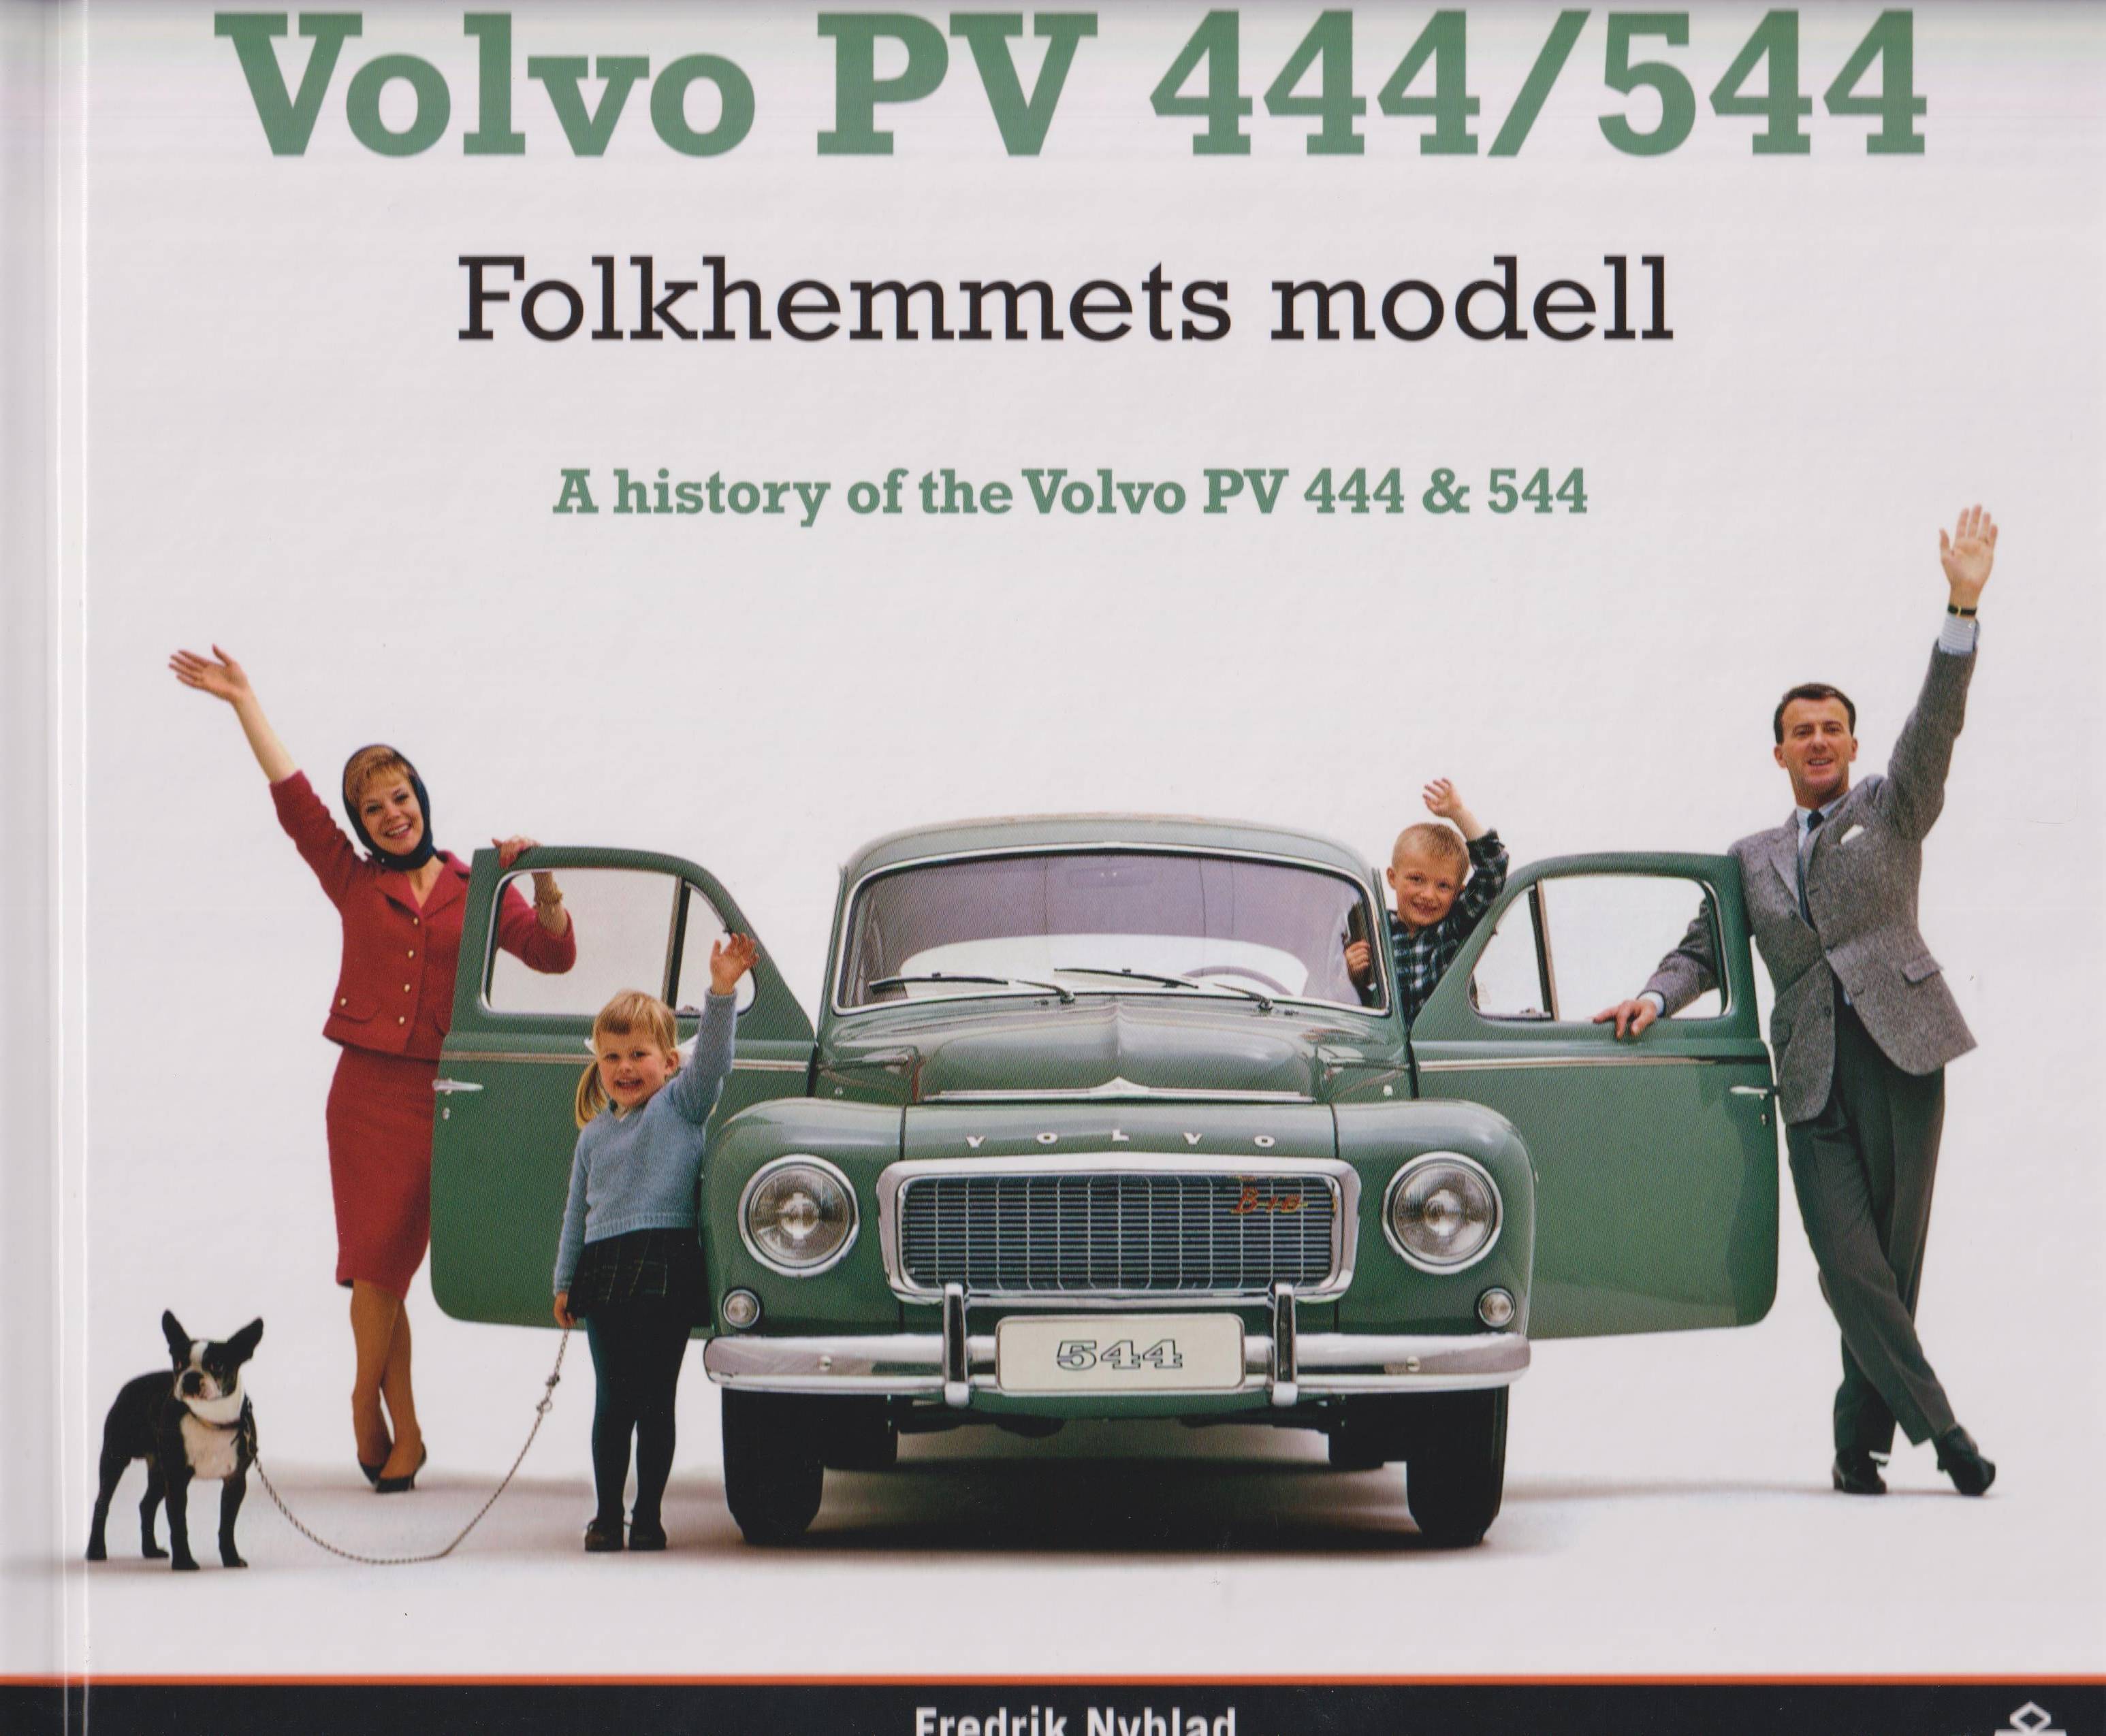 Volvo PV 444/544 Folkhemmets modell